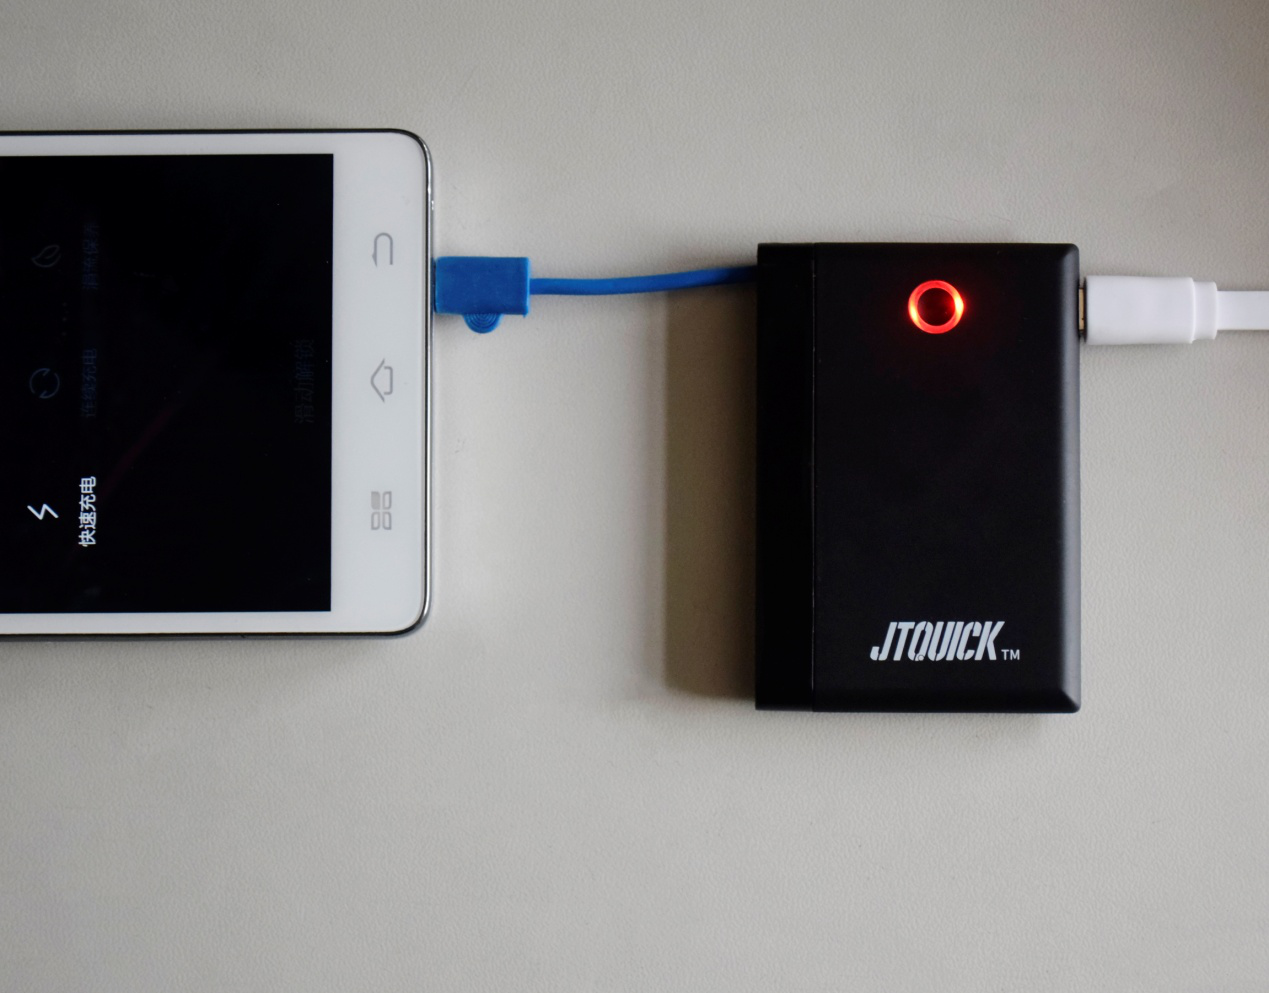 JTQUICK充电宝开箱图赏 比银行卡还小的石墨烯移动电源 智能公会